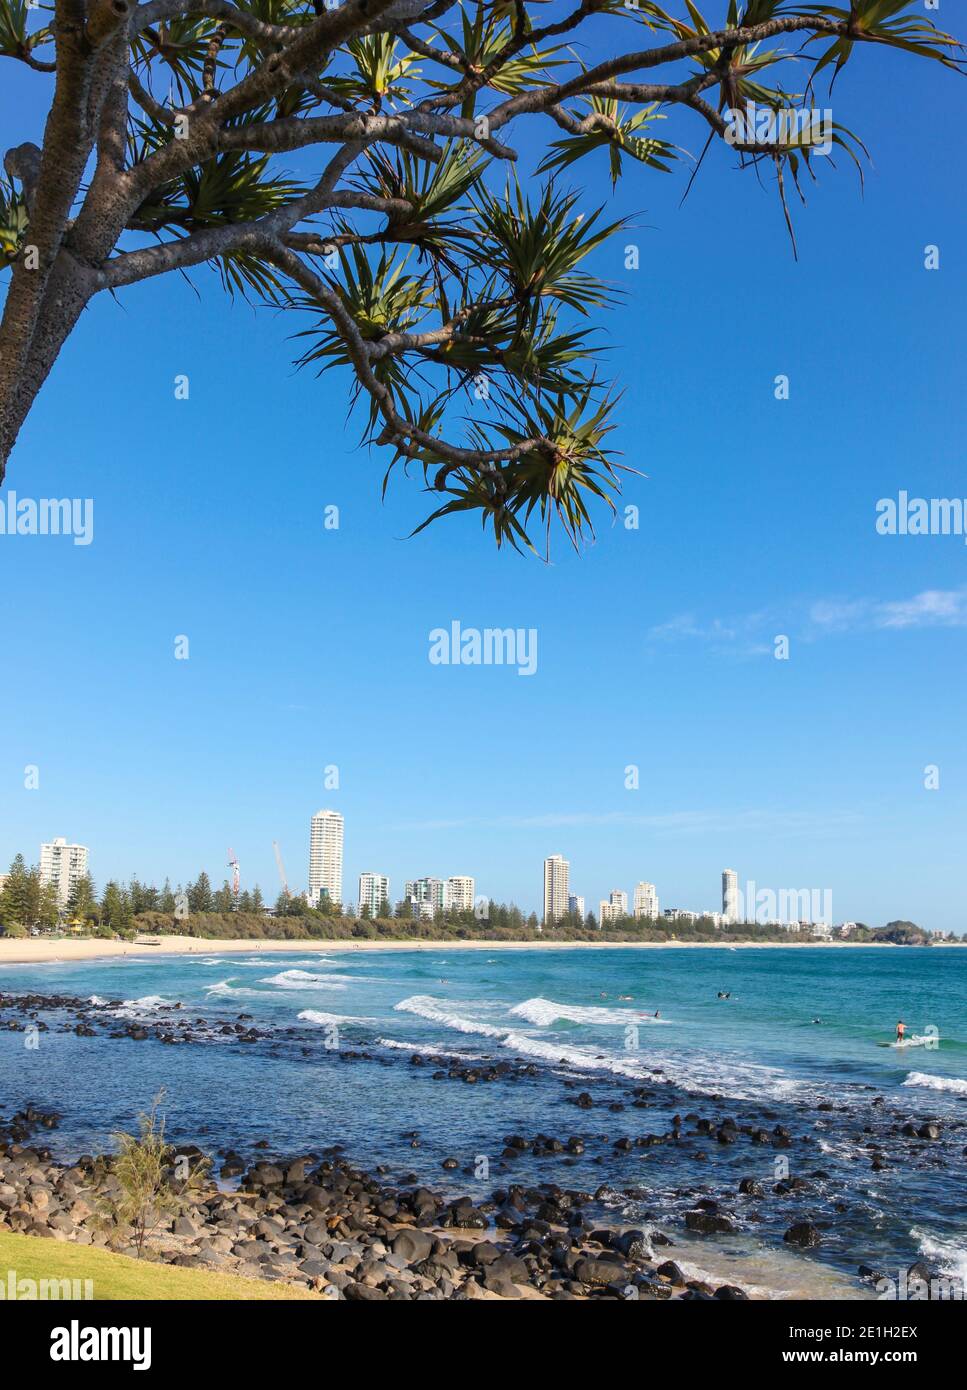 Surfers Paradise encadré à travers un arbre de pandanas de Burleigh Heads sur la côte du Queensland. Cette région est une destination touristique très populaire pour son p Banque D'Images